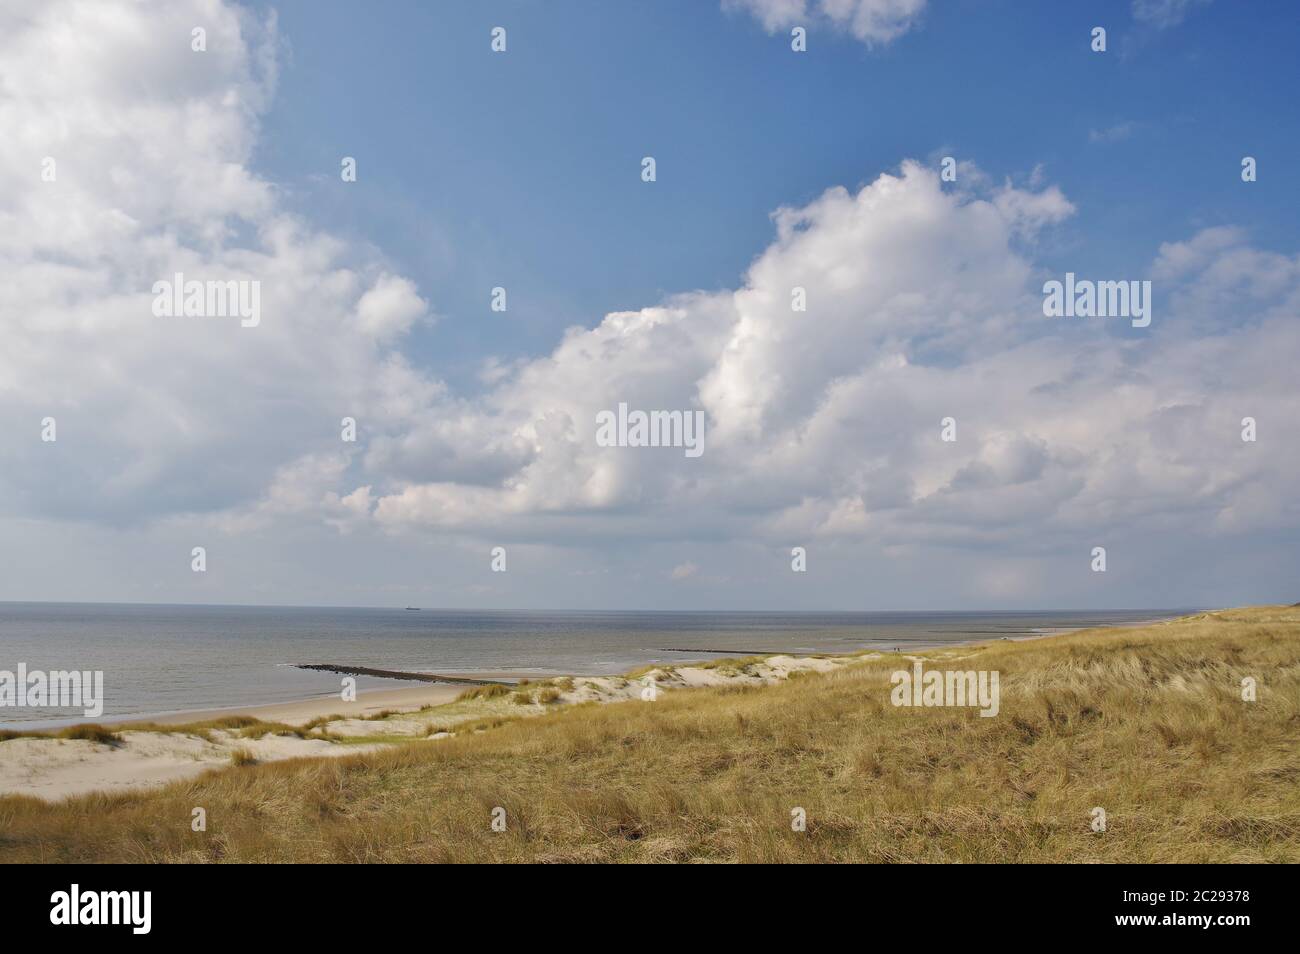 Il Mare del Nord e la spiaggia di sabbia, Julianadorp, distretto Den Helder, provincia Olanda, Paesi Bassi, Europa occidentale Foto Stock